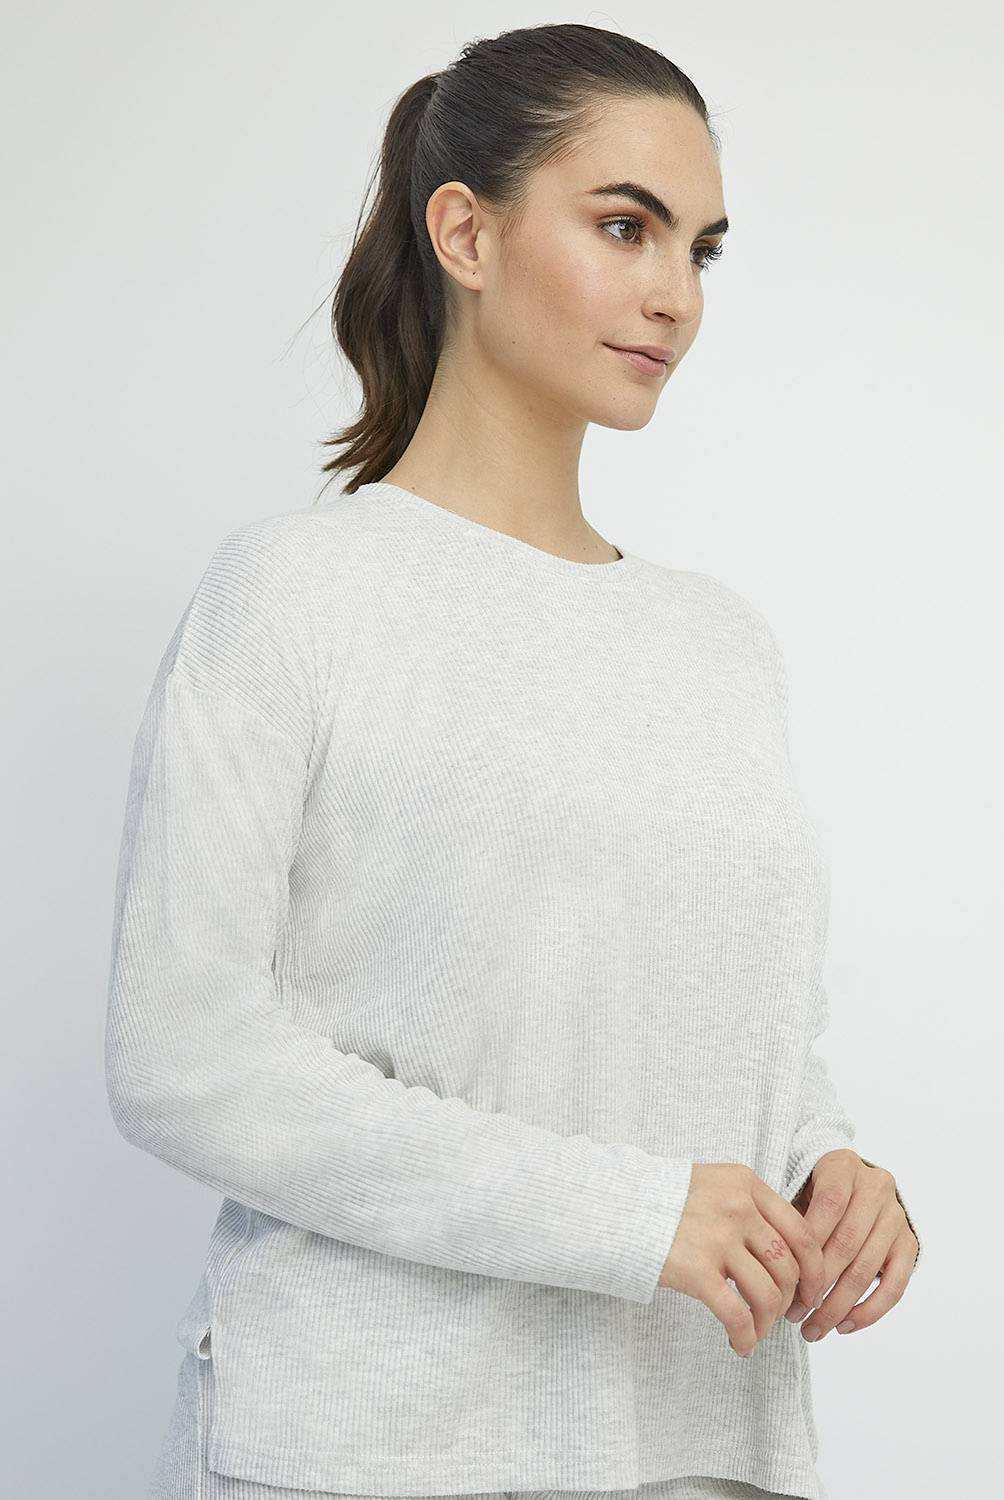 Sweater Mujer Lana Frizz Calentito Excelente Calidad